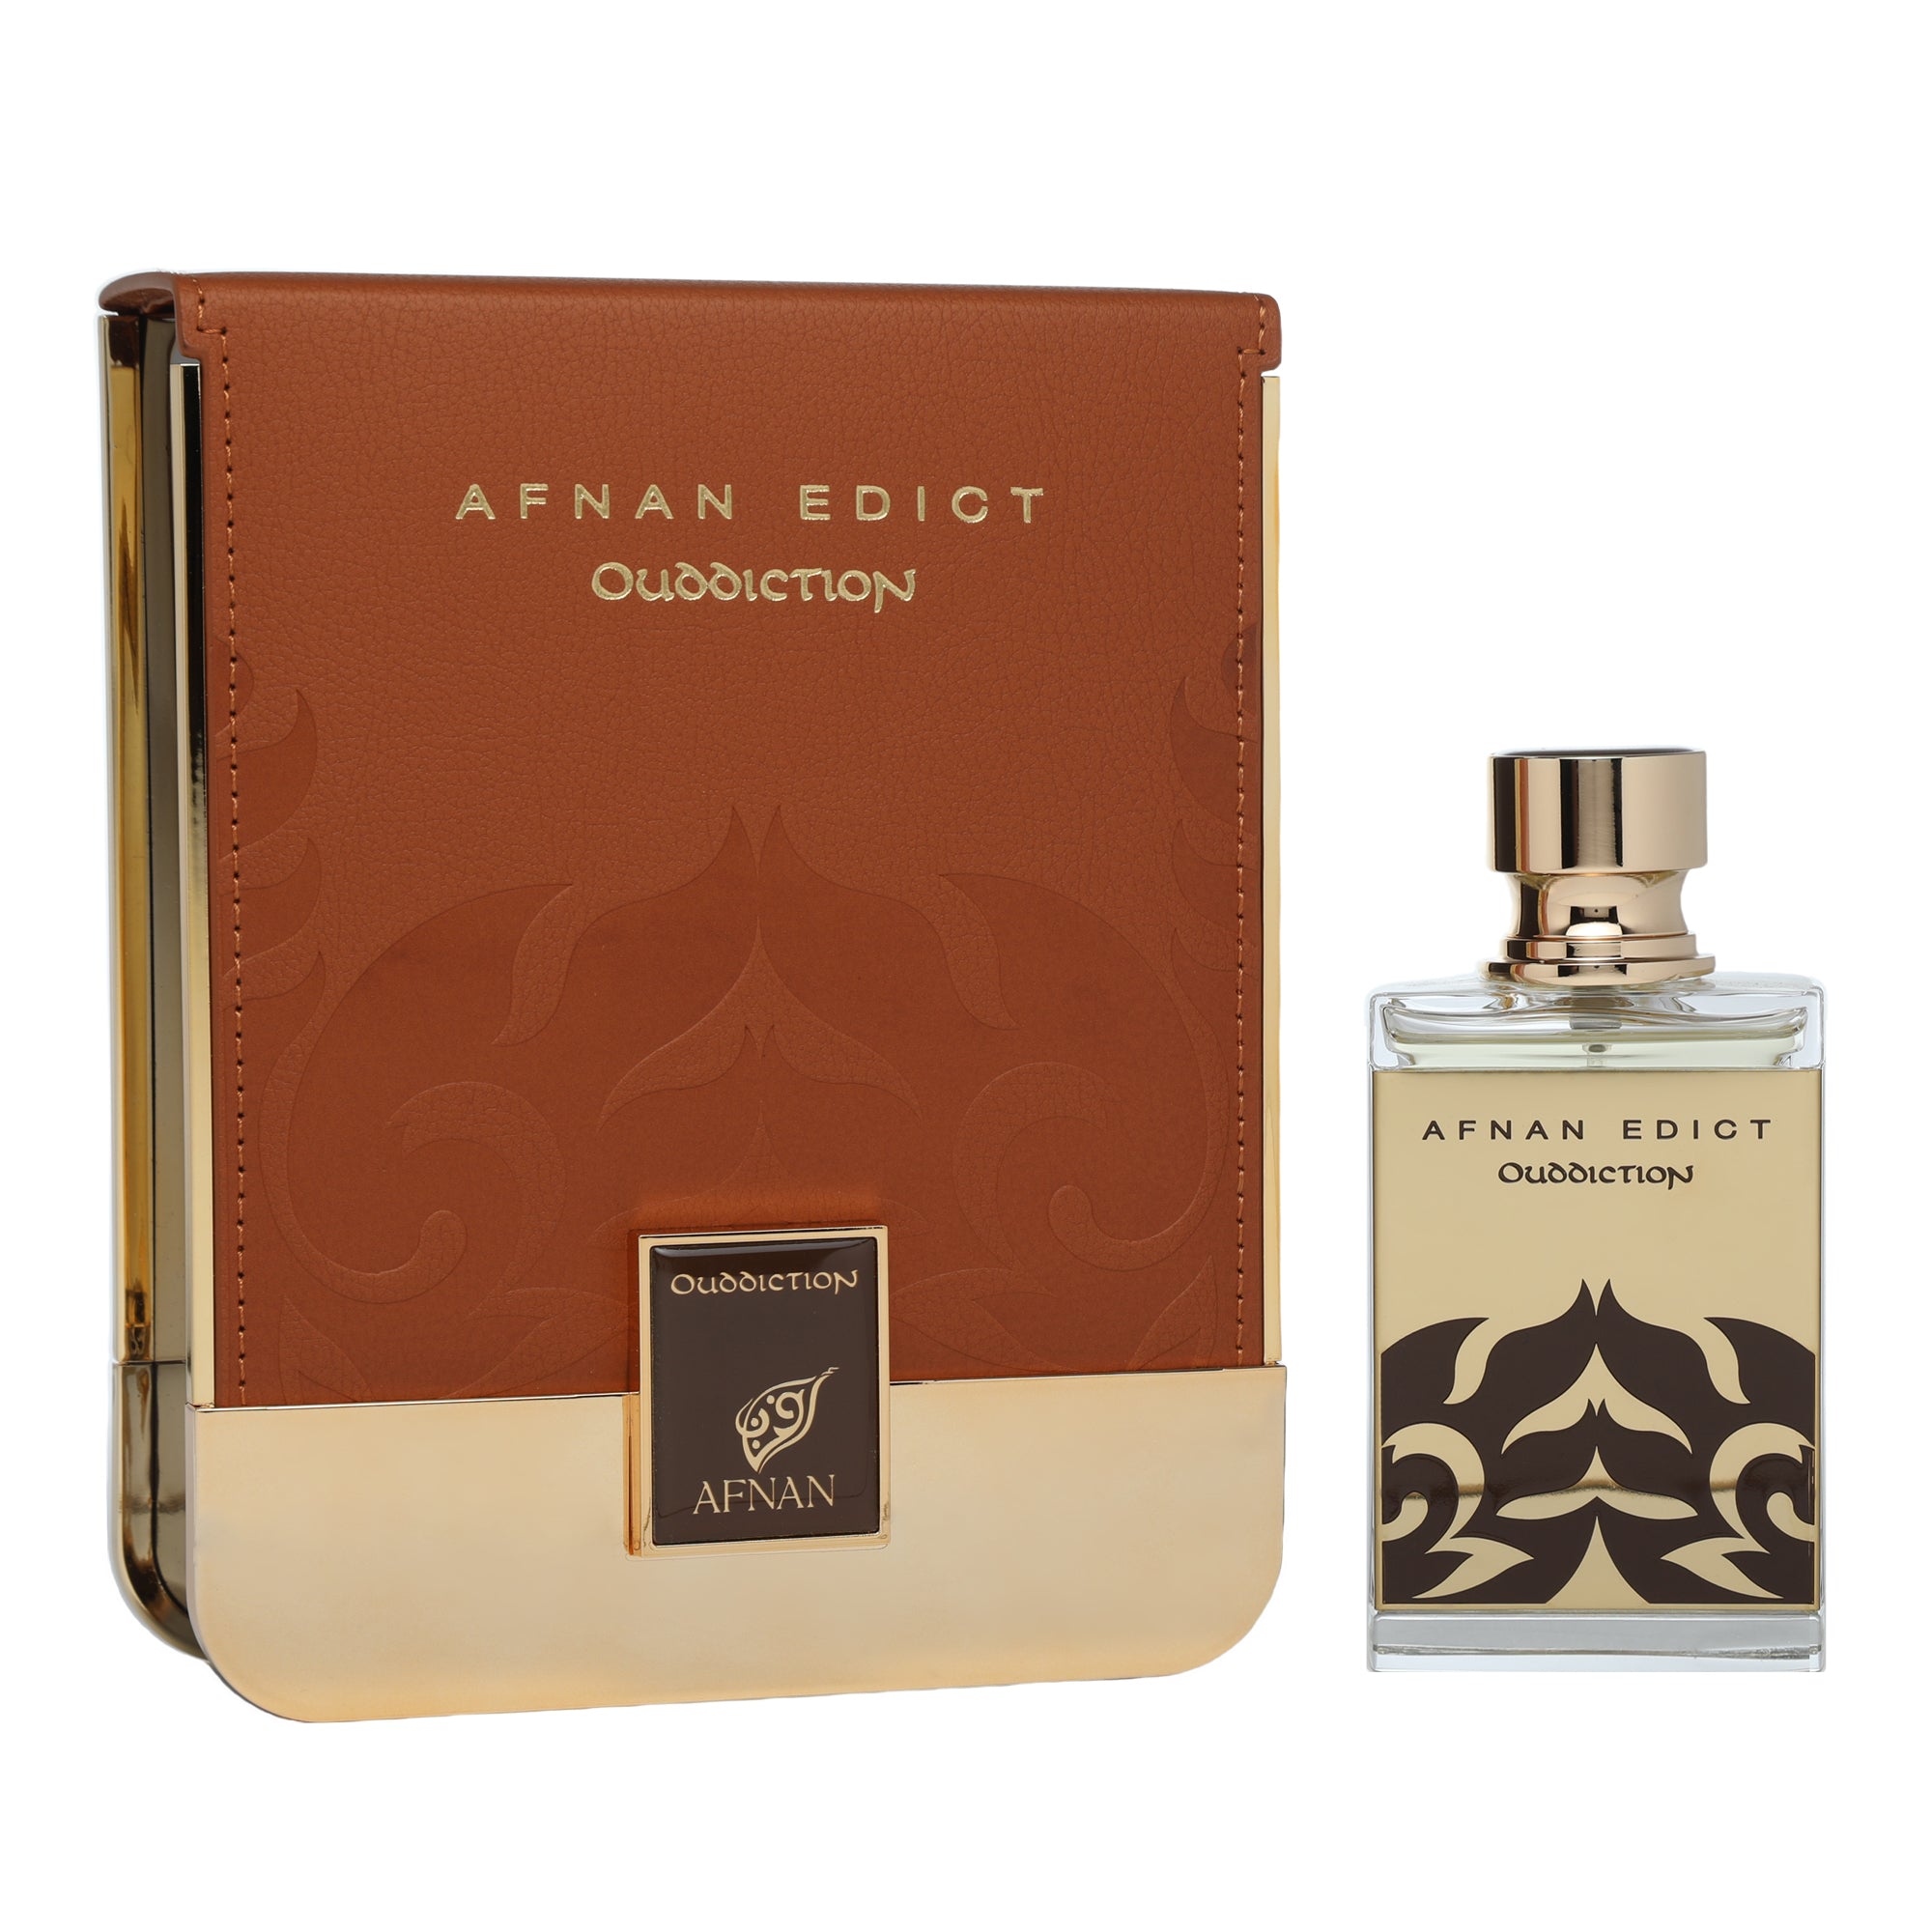 Afnan Edict Ouddiction Eau De Parfum 80ml